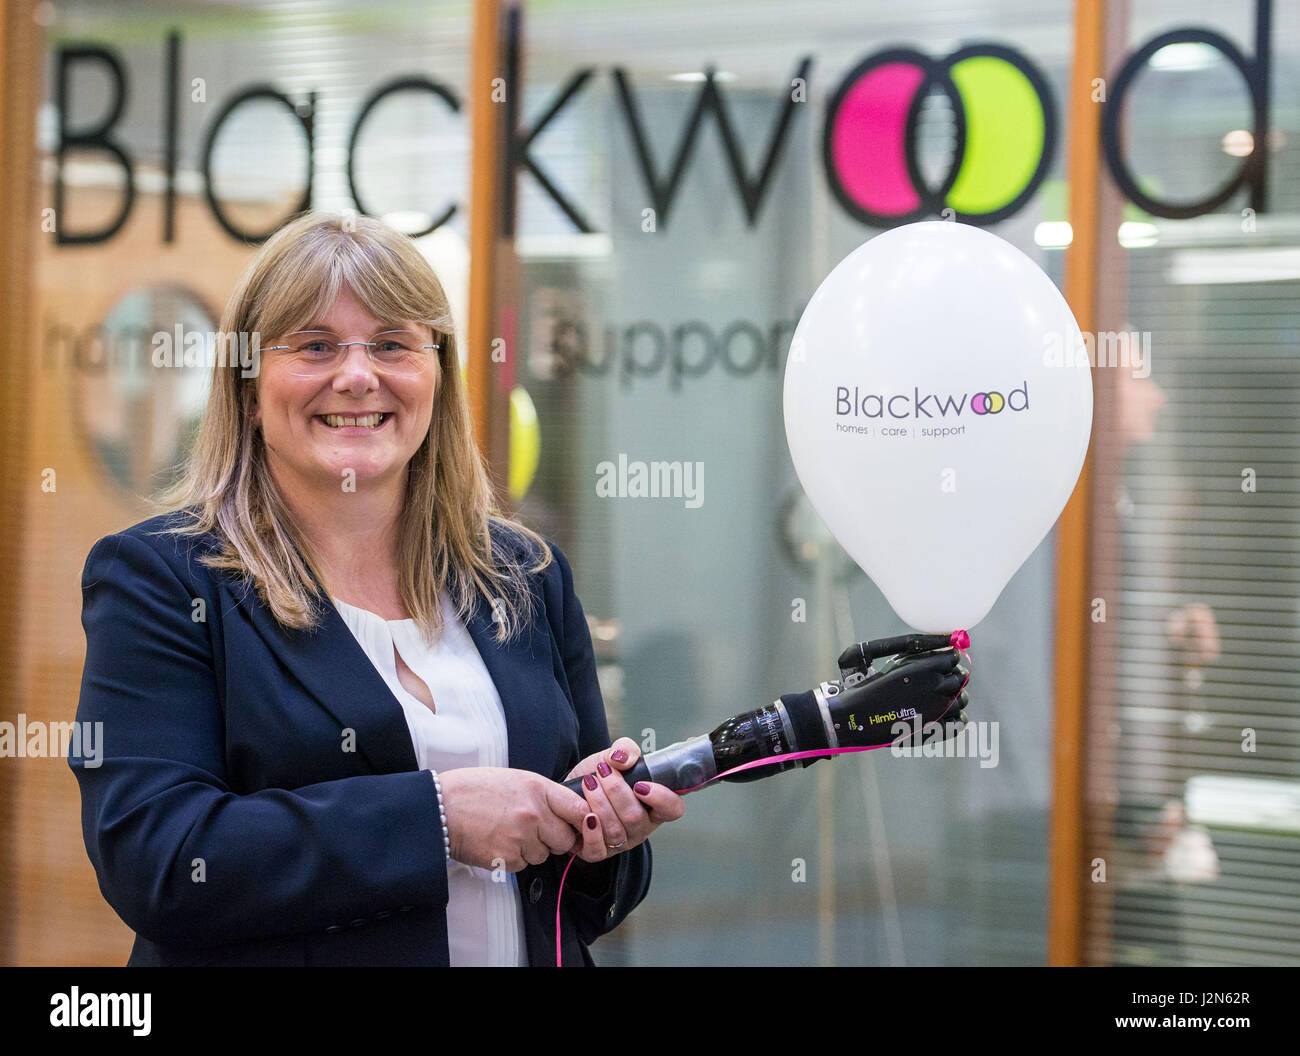 Sally Bowie responsable de marketing de Touch Bionics en la apertura de las nuevas oficinas de asistencia y asistencia de Blackwood Foto de stock